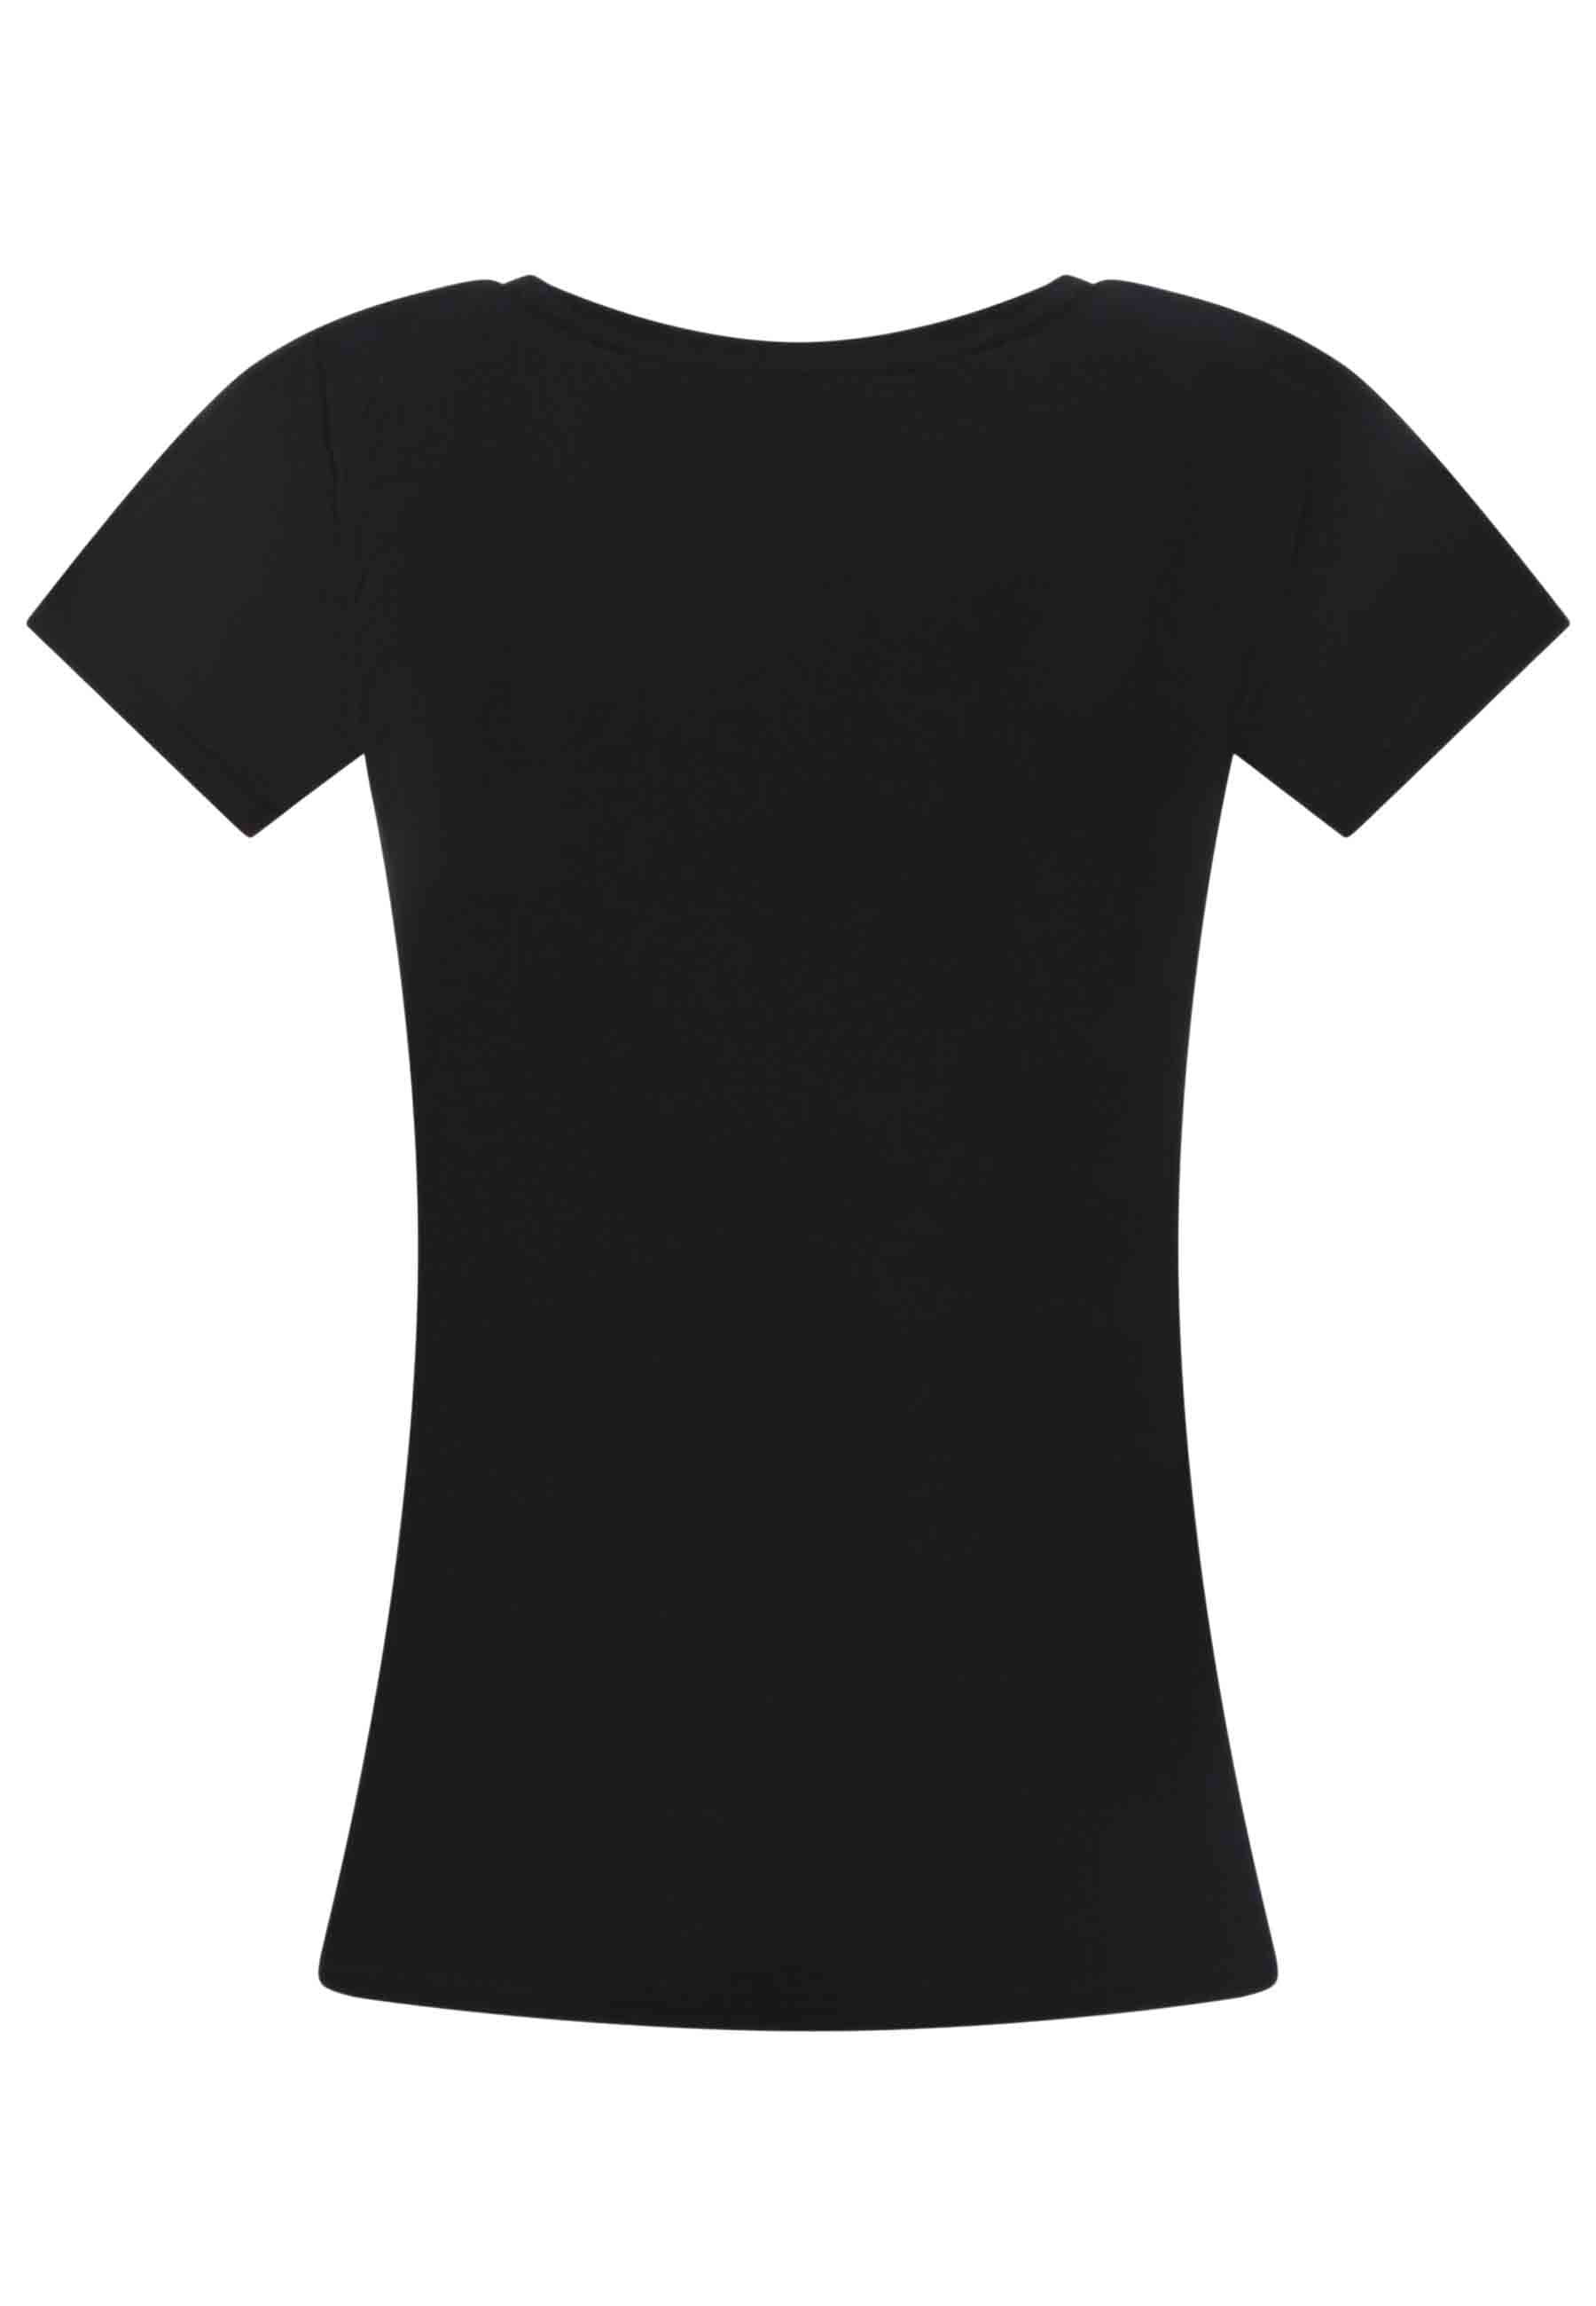 T-shirt donna Icons in cotone nero con stampa in seta